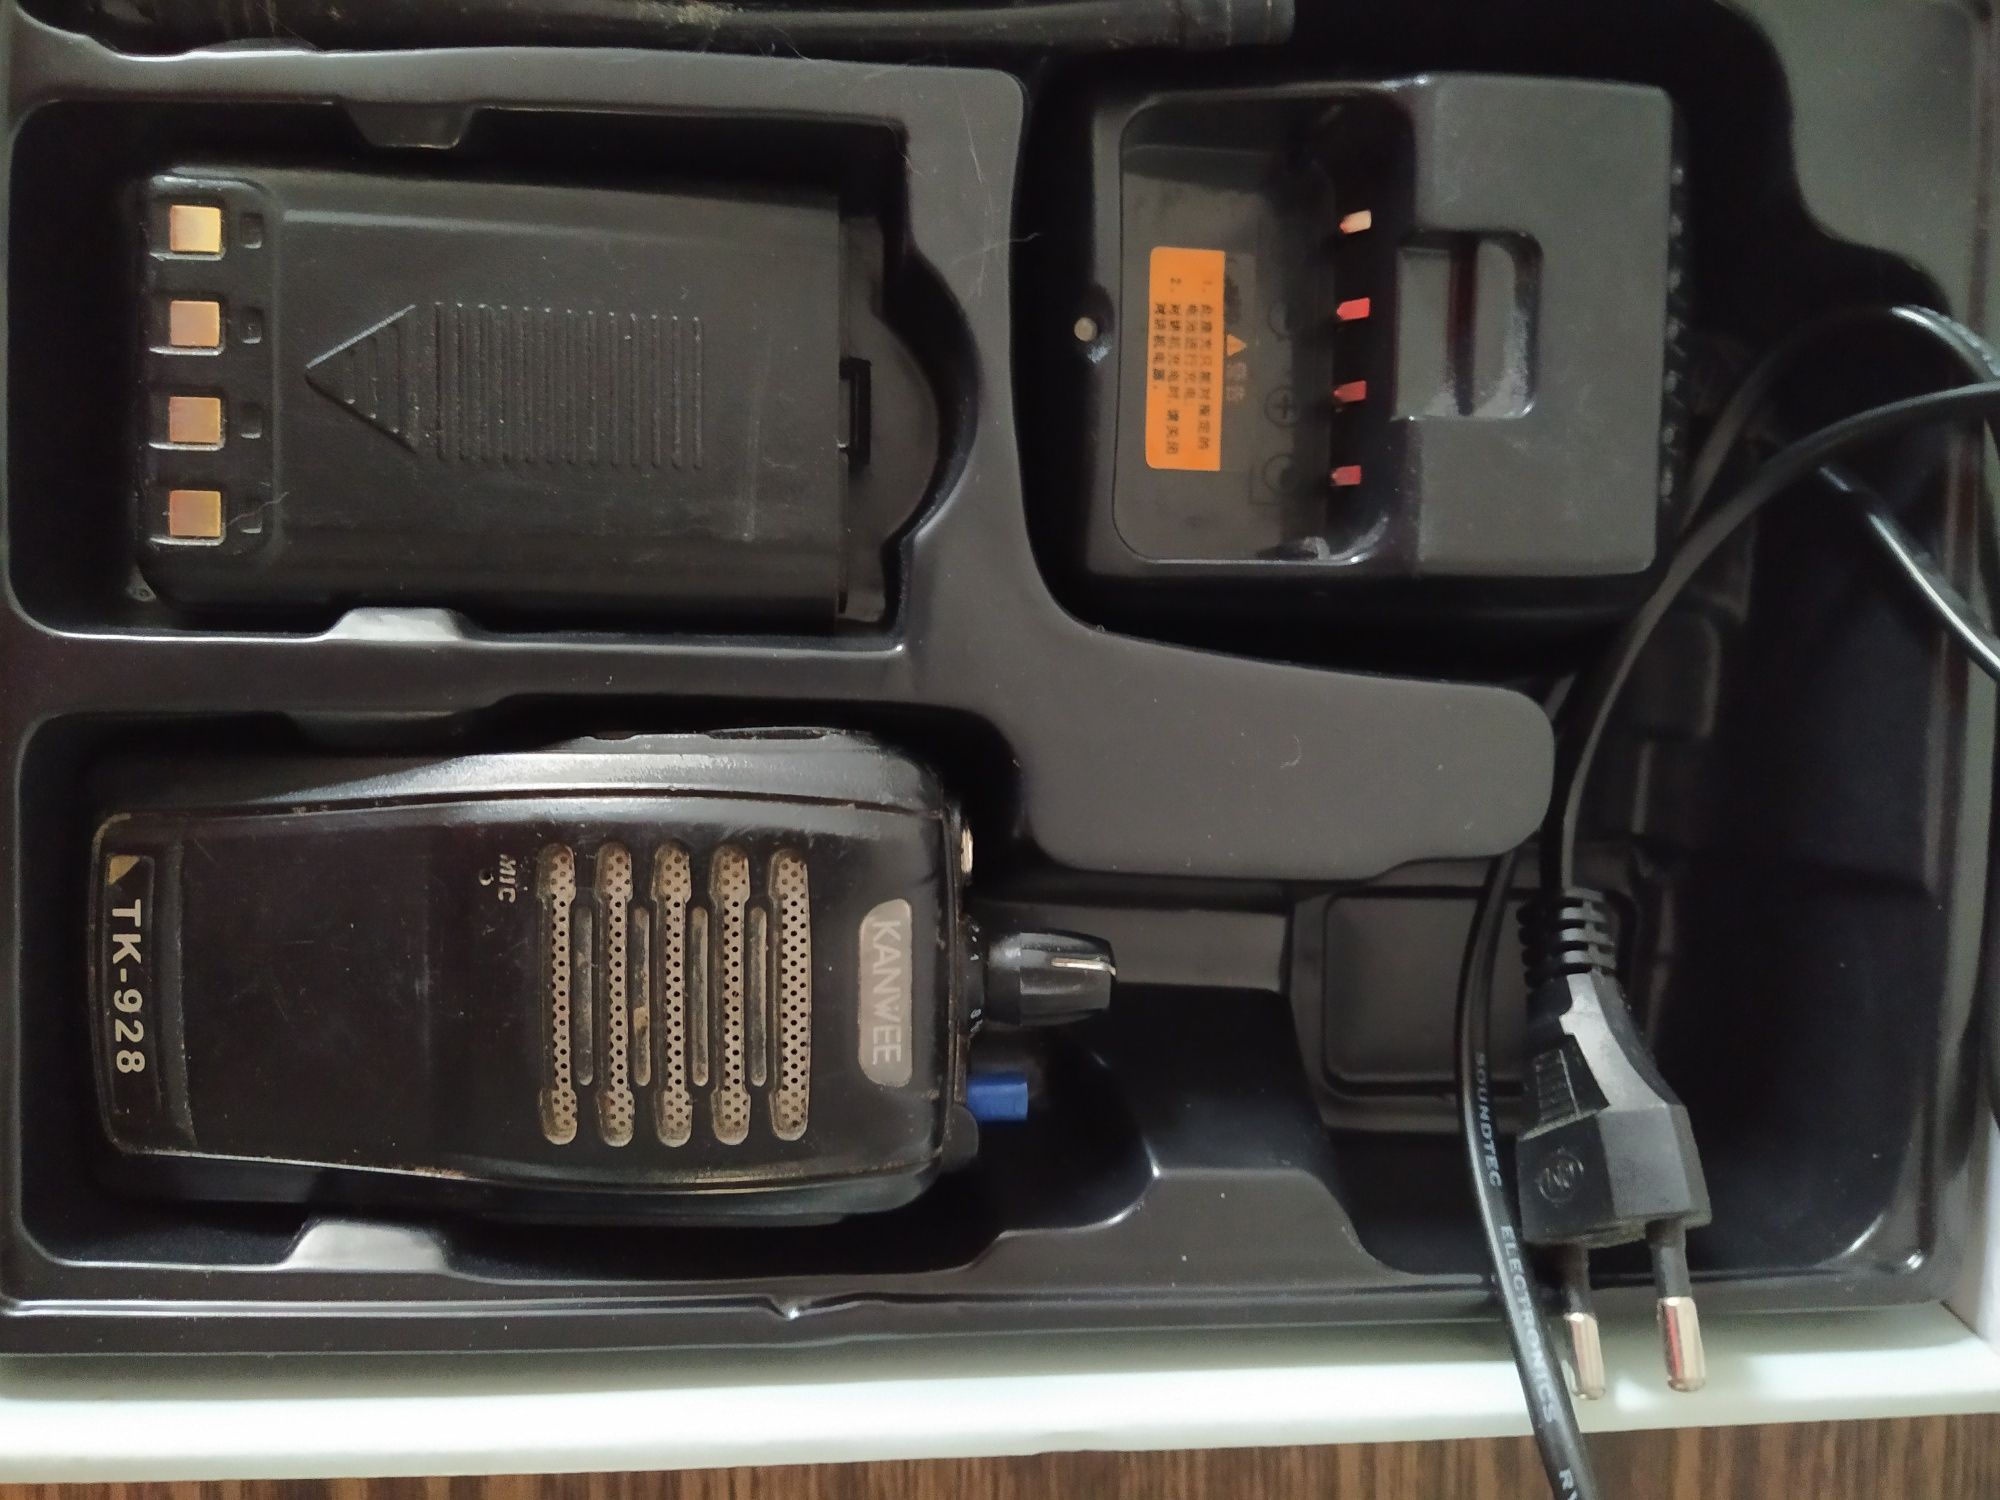 Radiotelefon Kanwee TK-928 UHF HRS